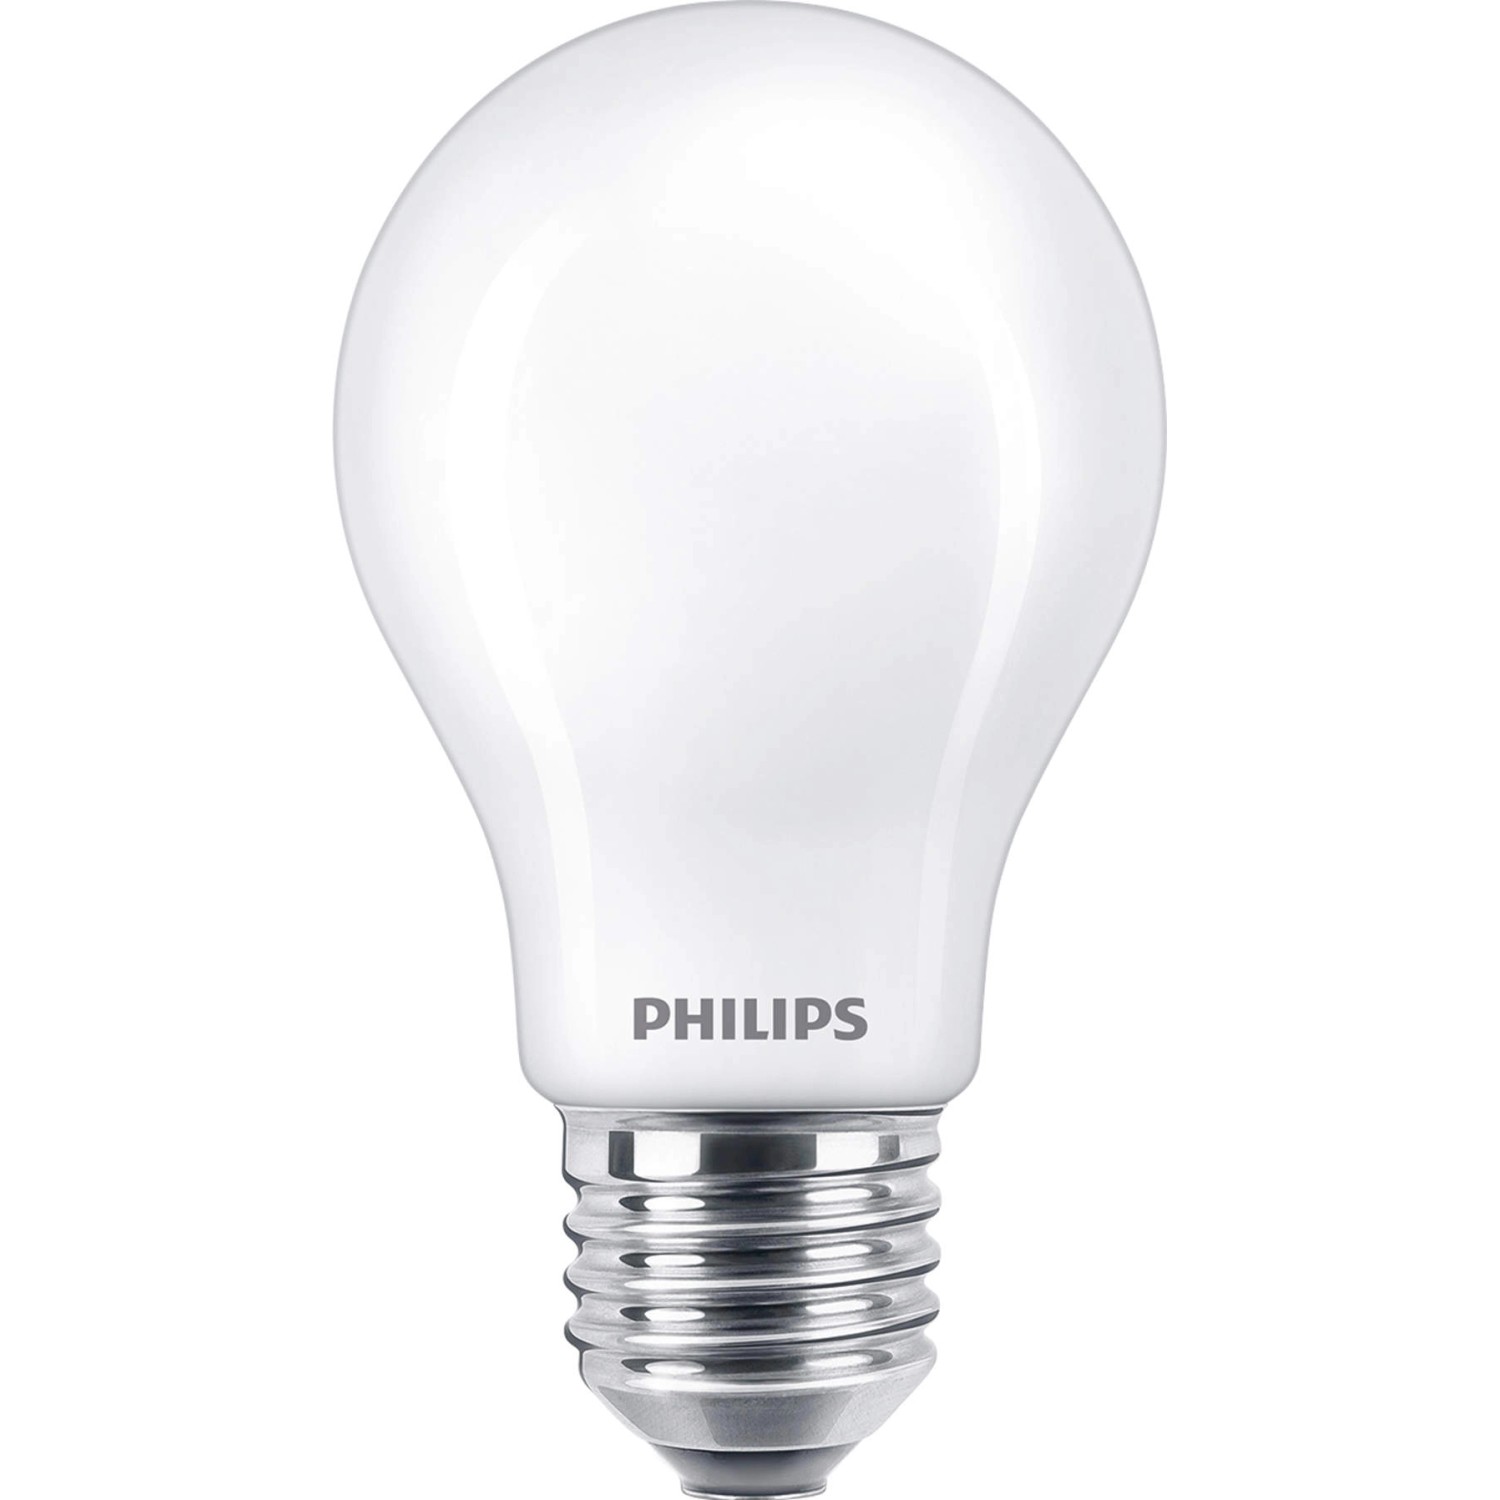 Philips LED-Leuchtmittel E27 Glühlampenform 7 W 806 lm 2er Set 11 x 6 cm (H x Ø)